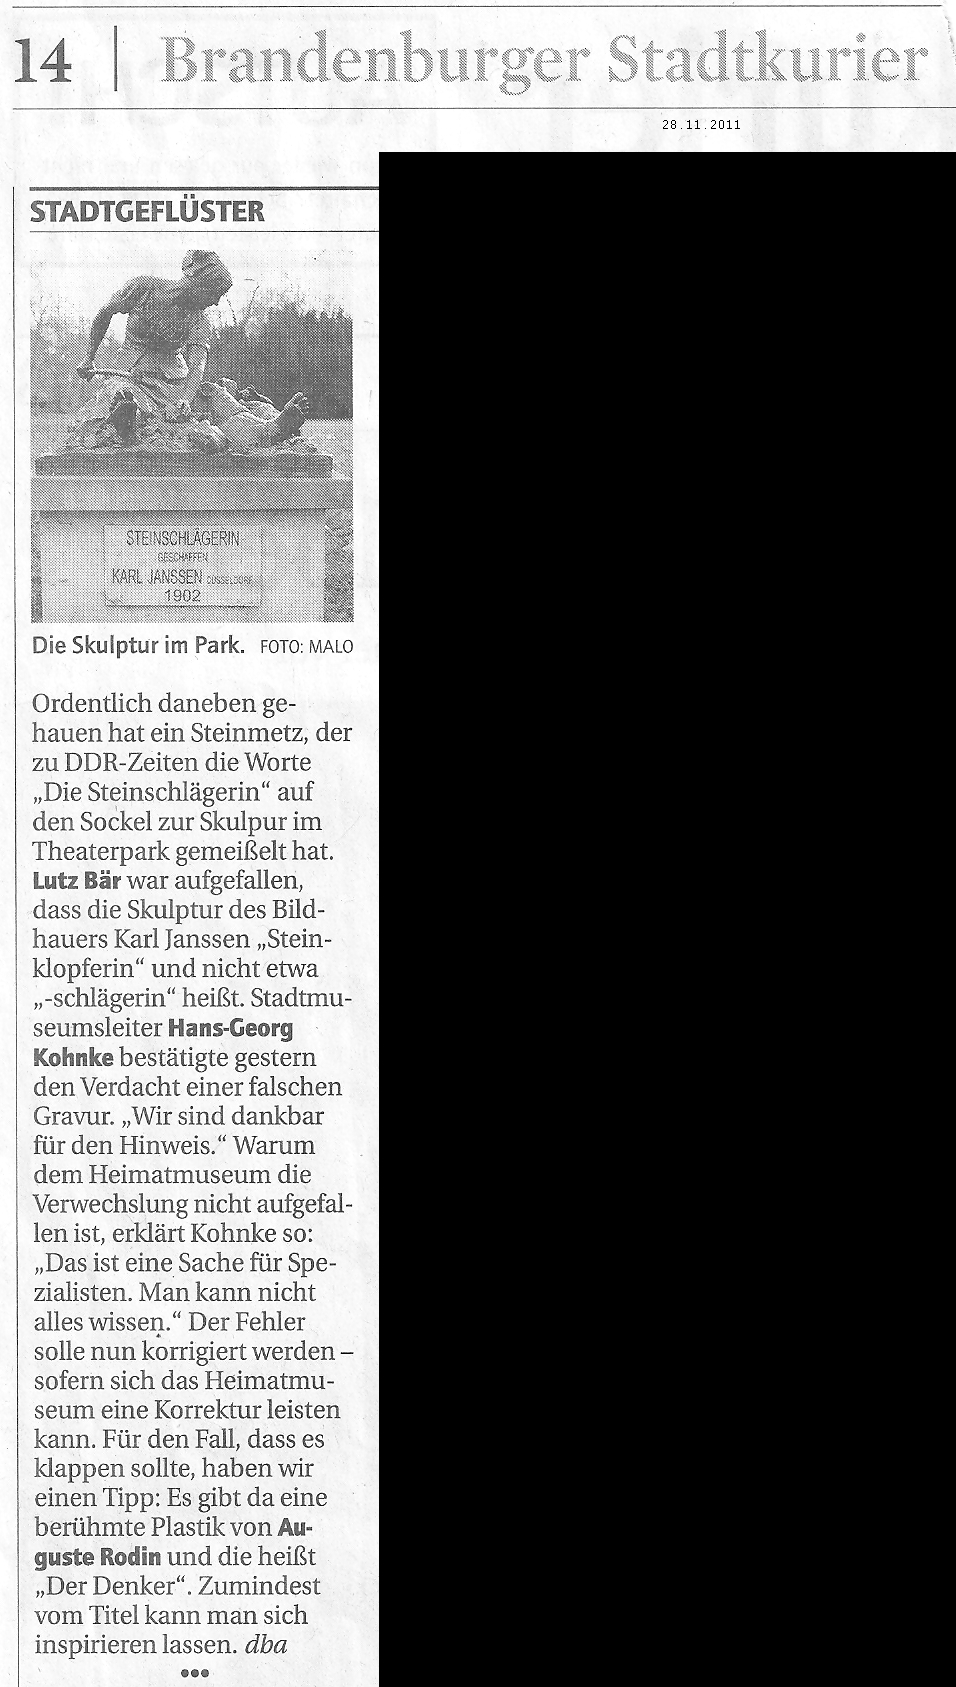 Artikel Brandenburger Stadtkurier28.11.2011